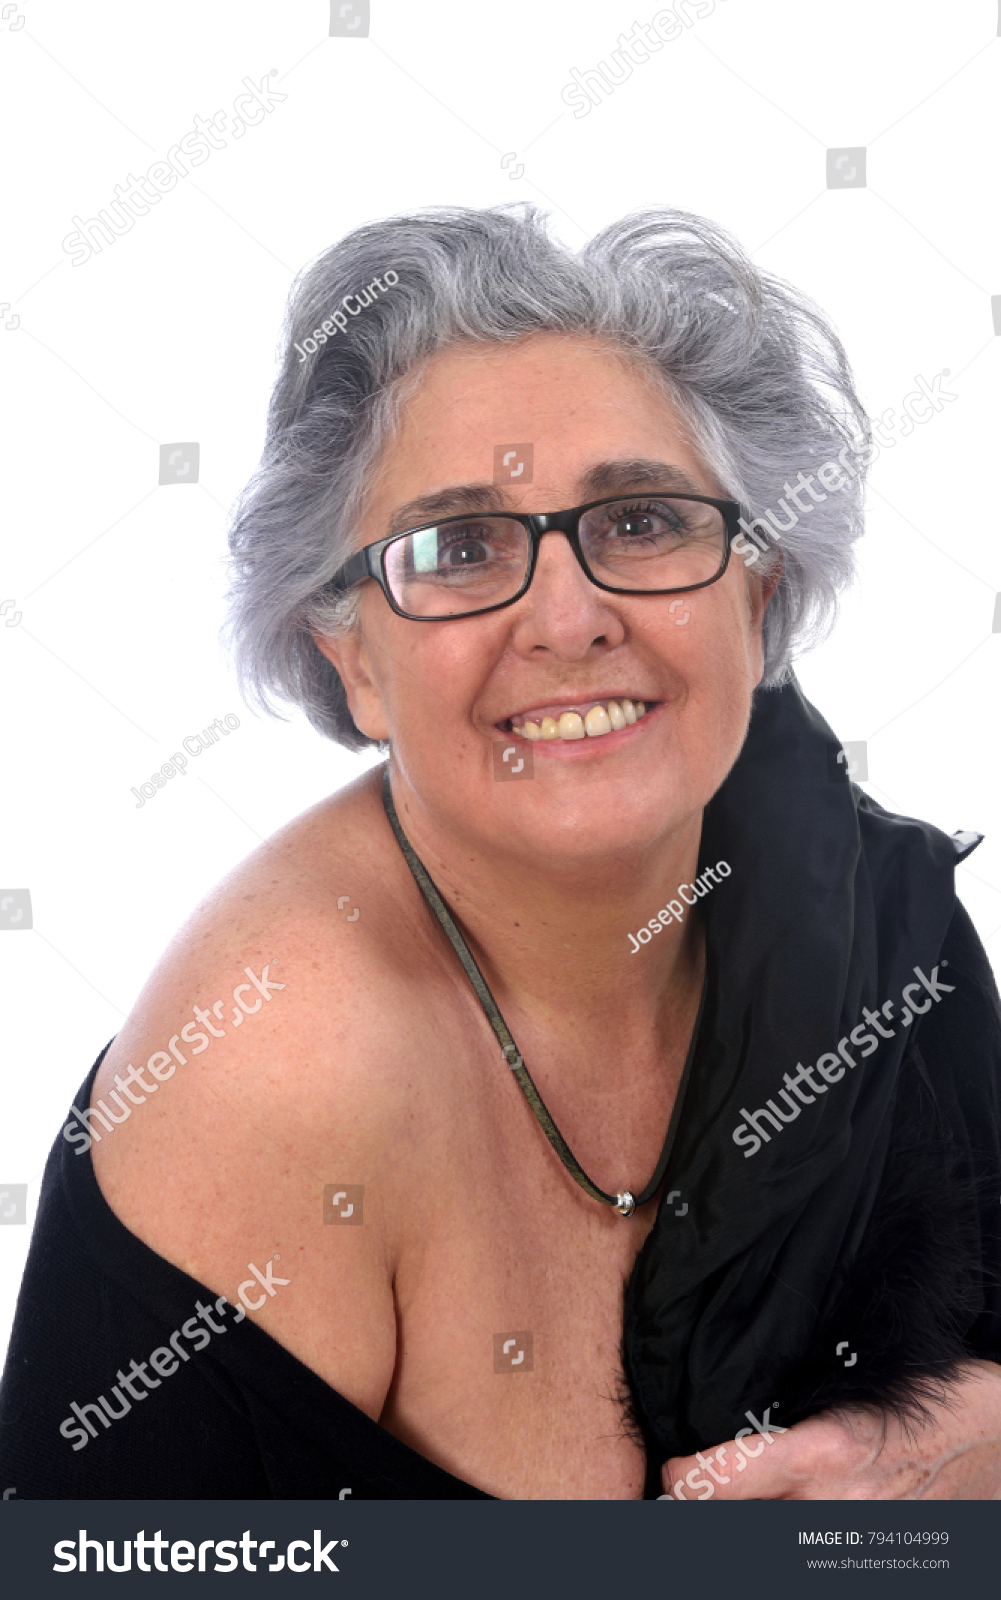 Seksy older women fotos